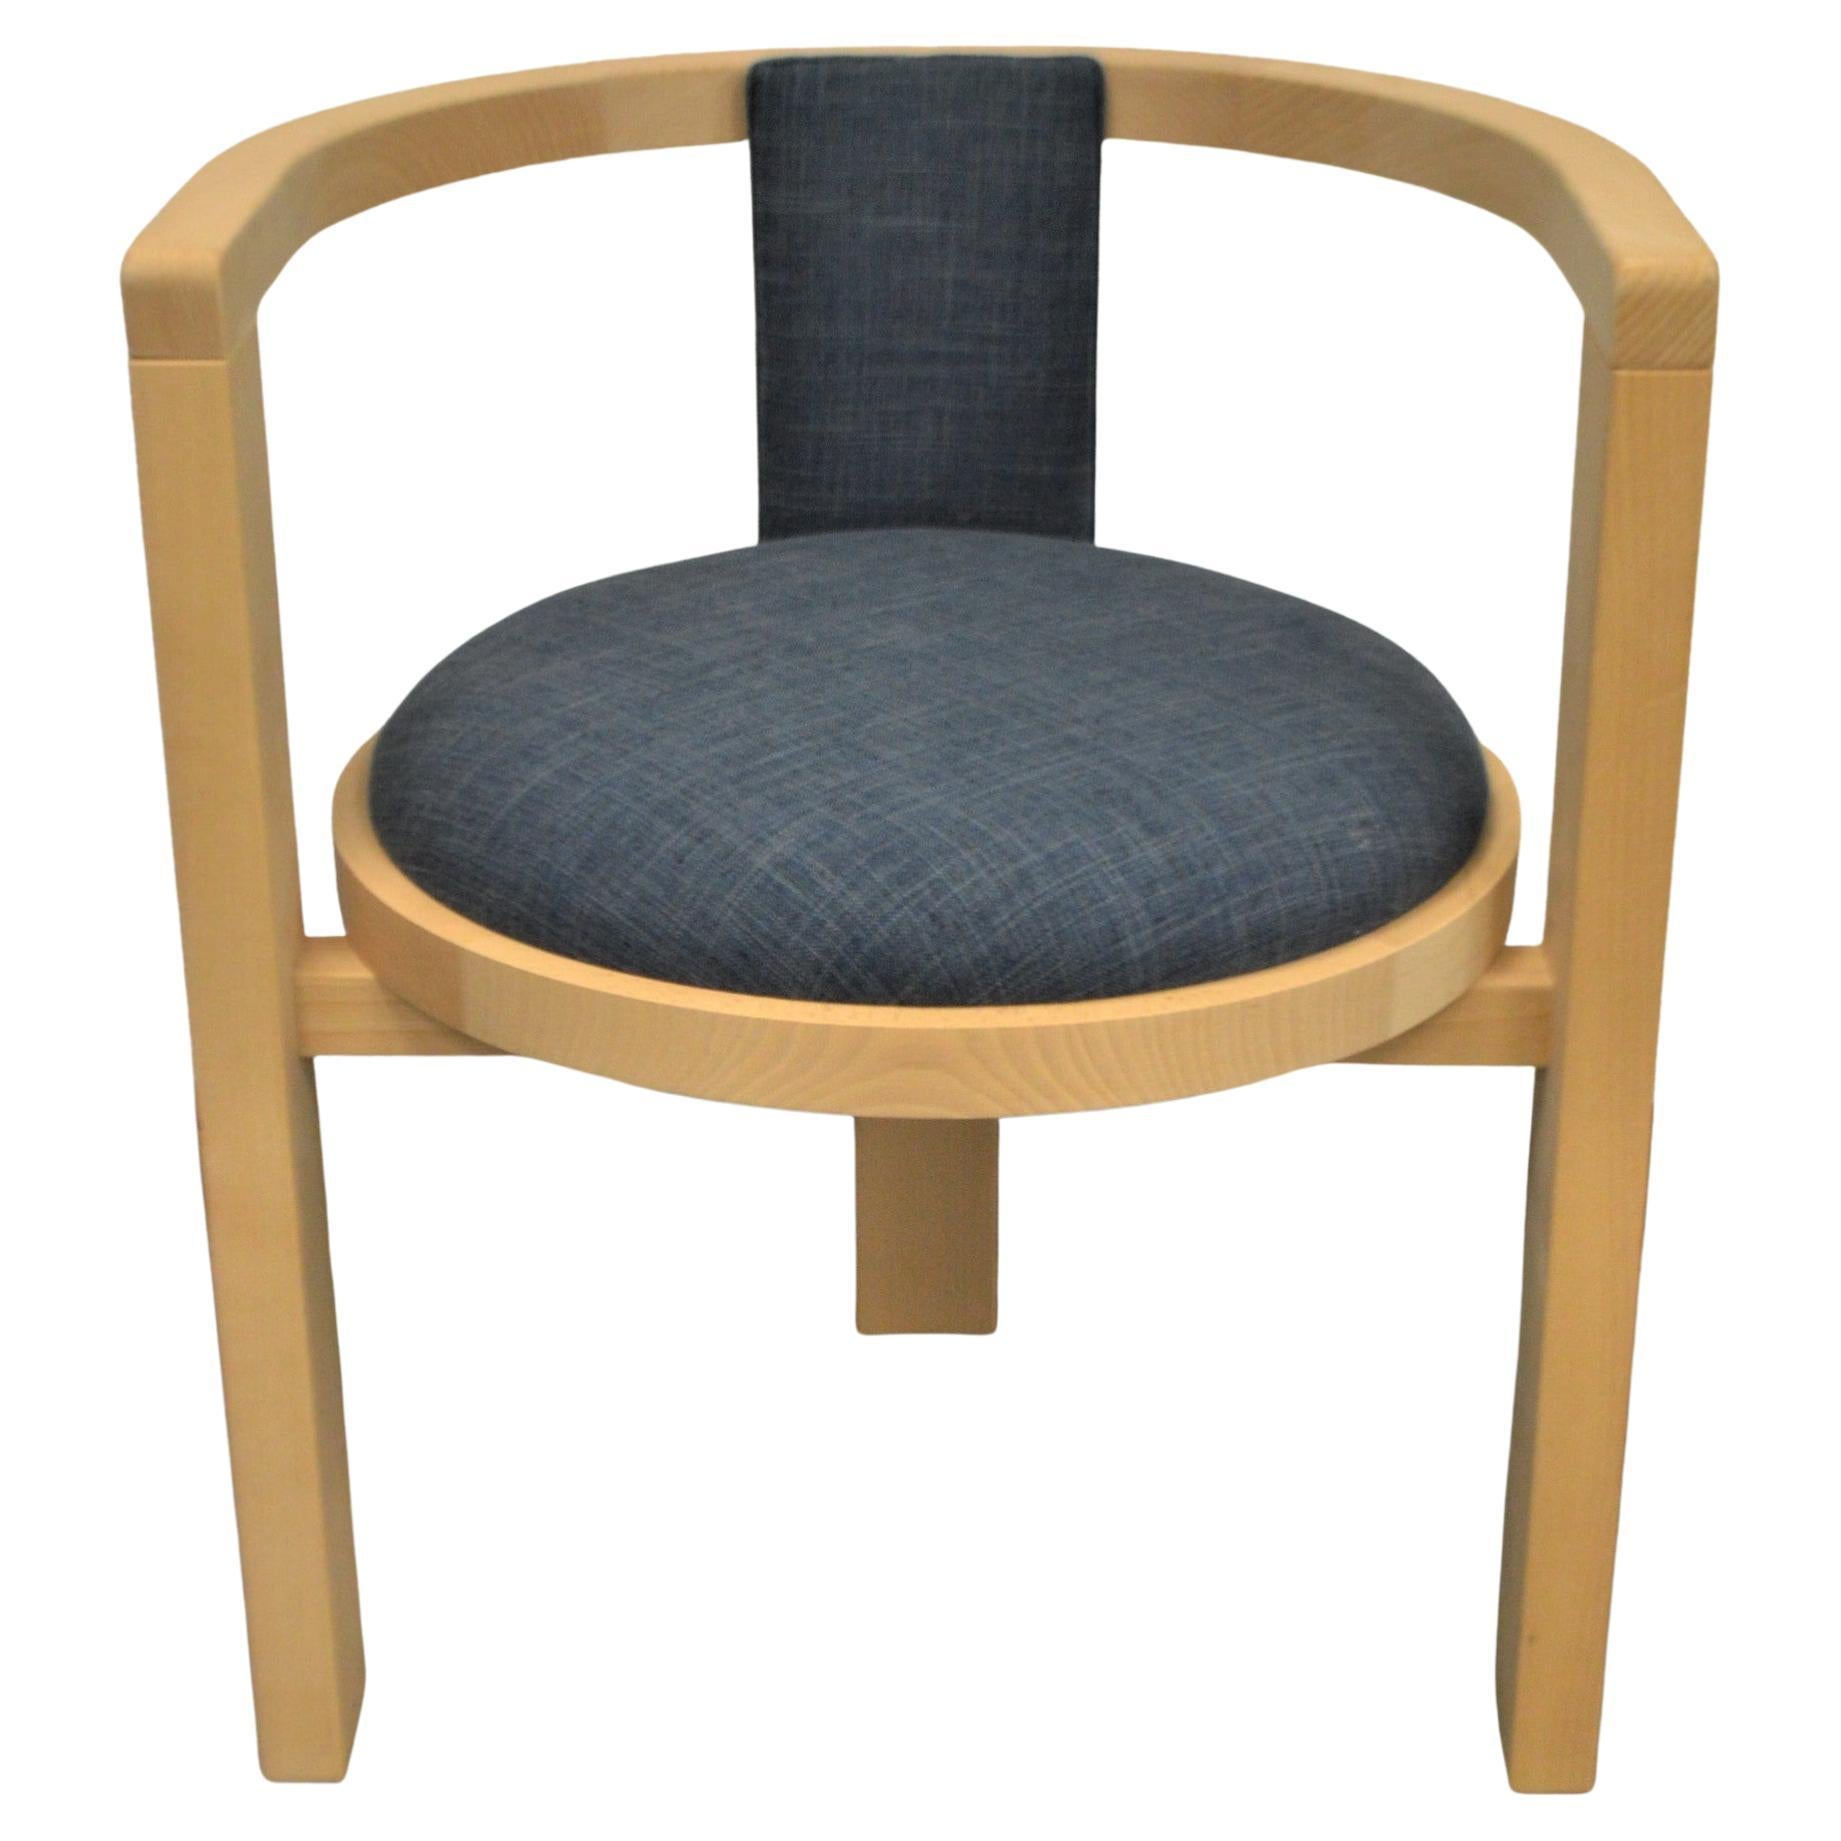 Moderner Ess- oder Akzentstuhl aus Massivholz mit gepolstertem Sitz für eine individuelle Gestaltung.